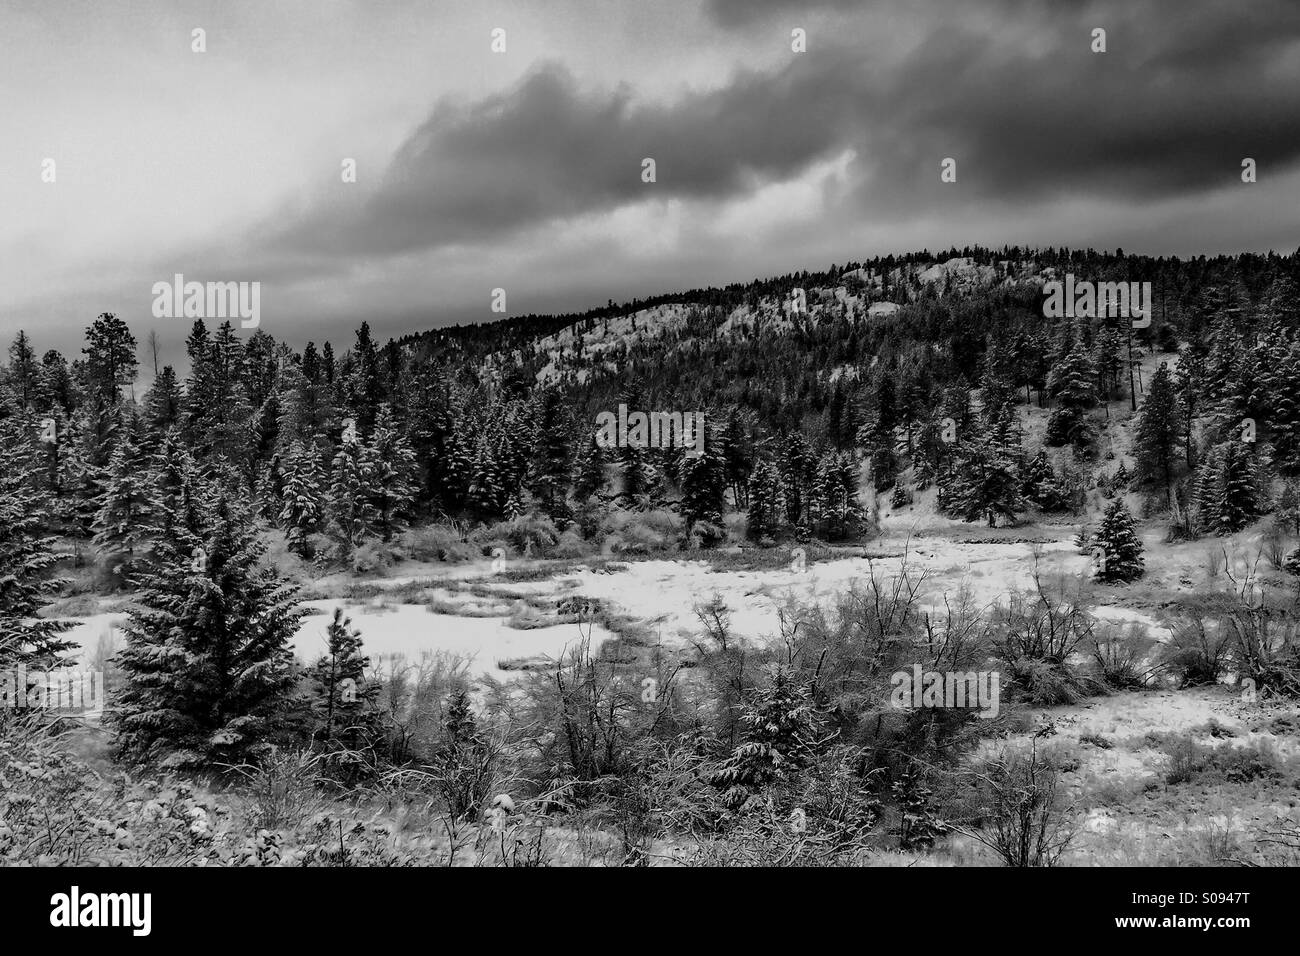 Winterlandschaft in schwarz und weiß. Der Boden und die Bäume in den immergrünen Wald sind in frischem Schnee bedeckt. Wolken Bewegung. Stockfoto